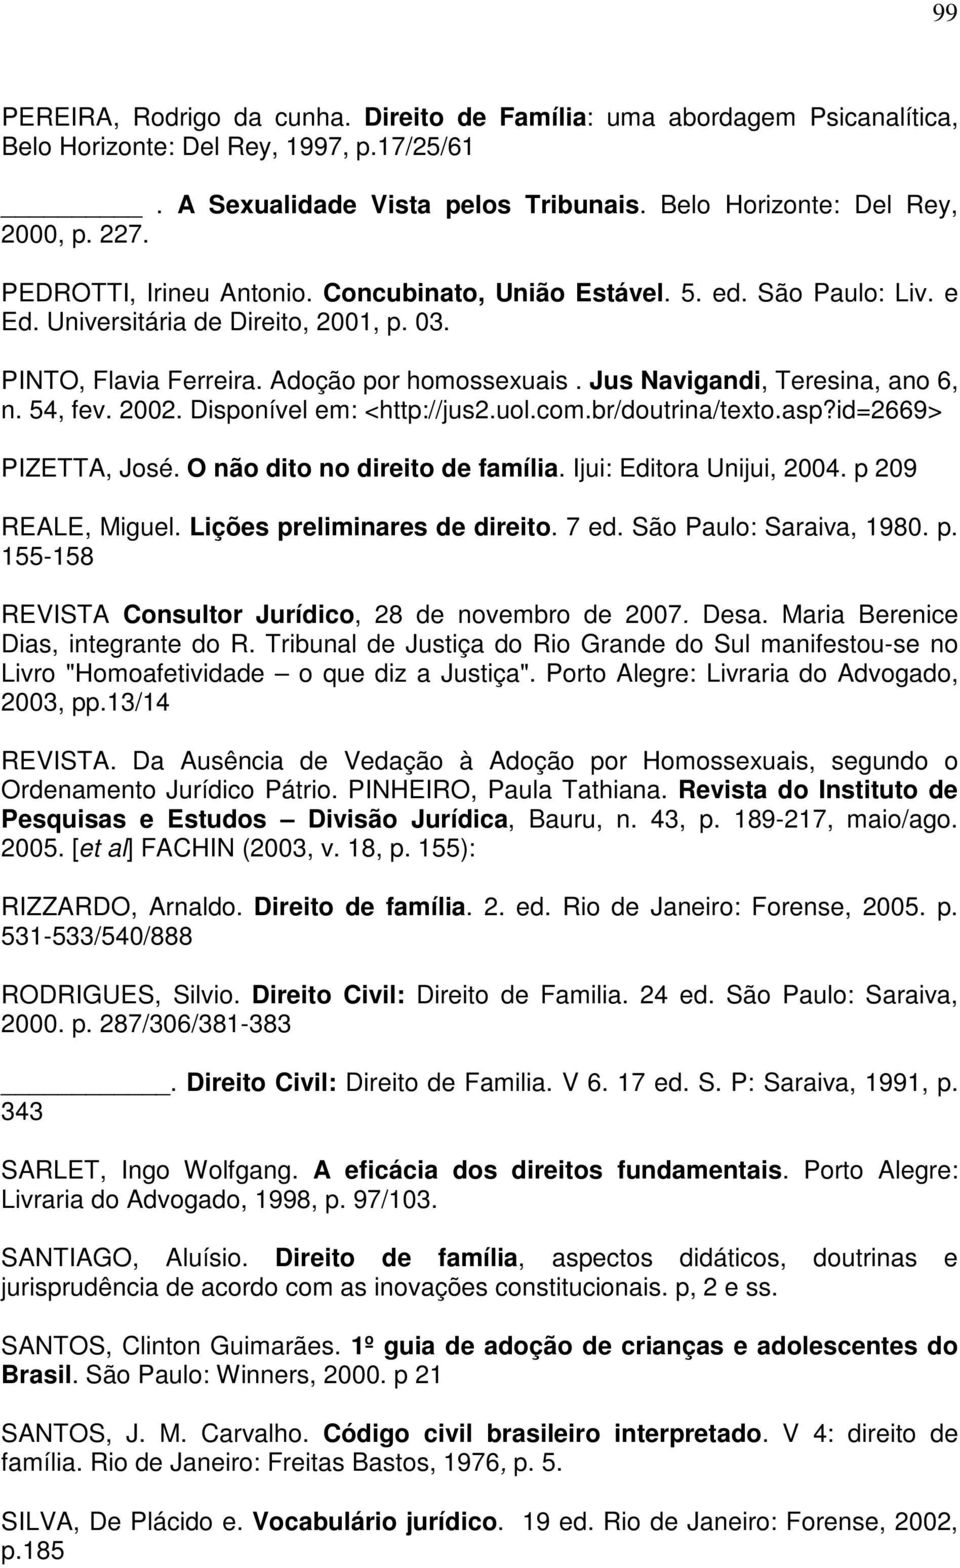 Jus Navigandi, Teresina, ano 6, n. 54, fev. 2002. Disponível em: <http://jus2.uol.com.br/doutrina/texto.asp?id=2669> PIZETTA, José. O não dito no direito de família. Ijui: Editora Unijui, 2004.